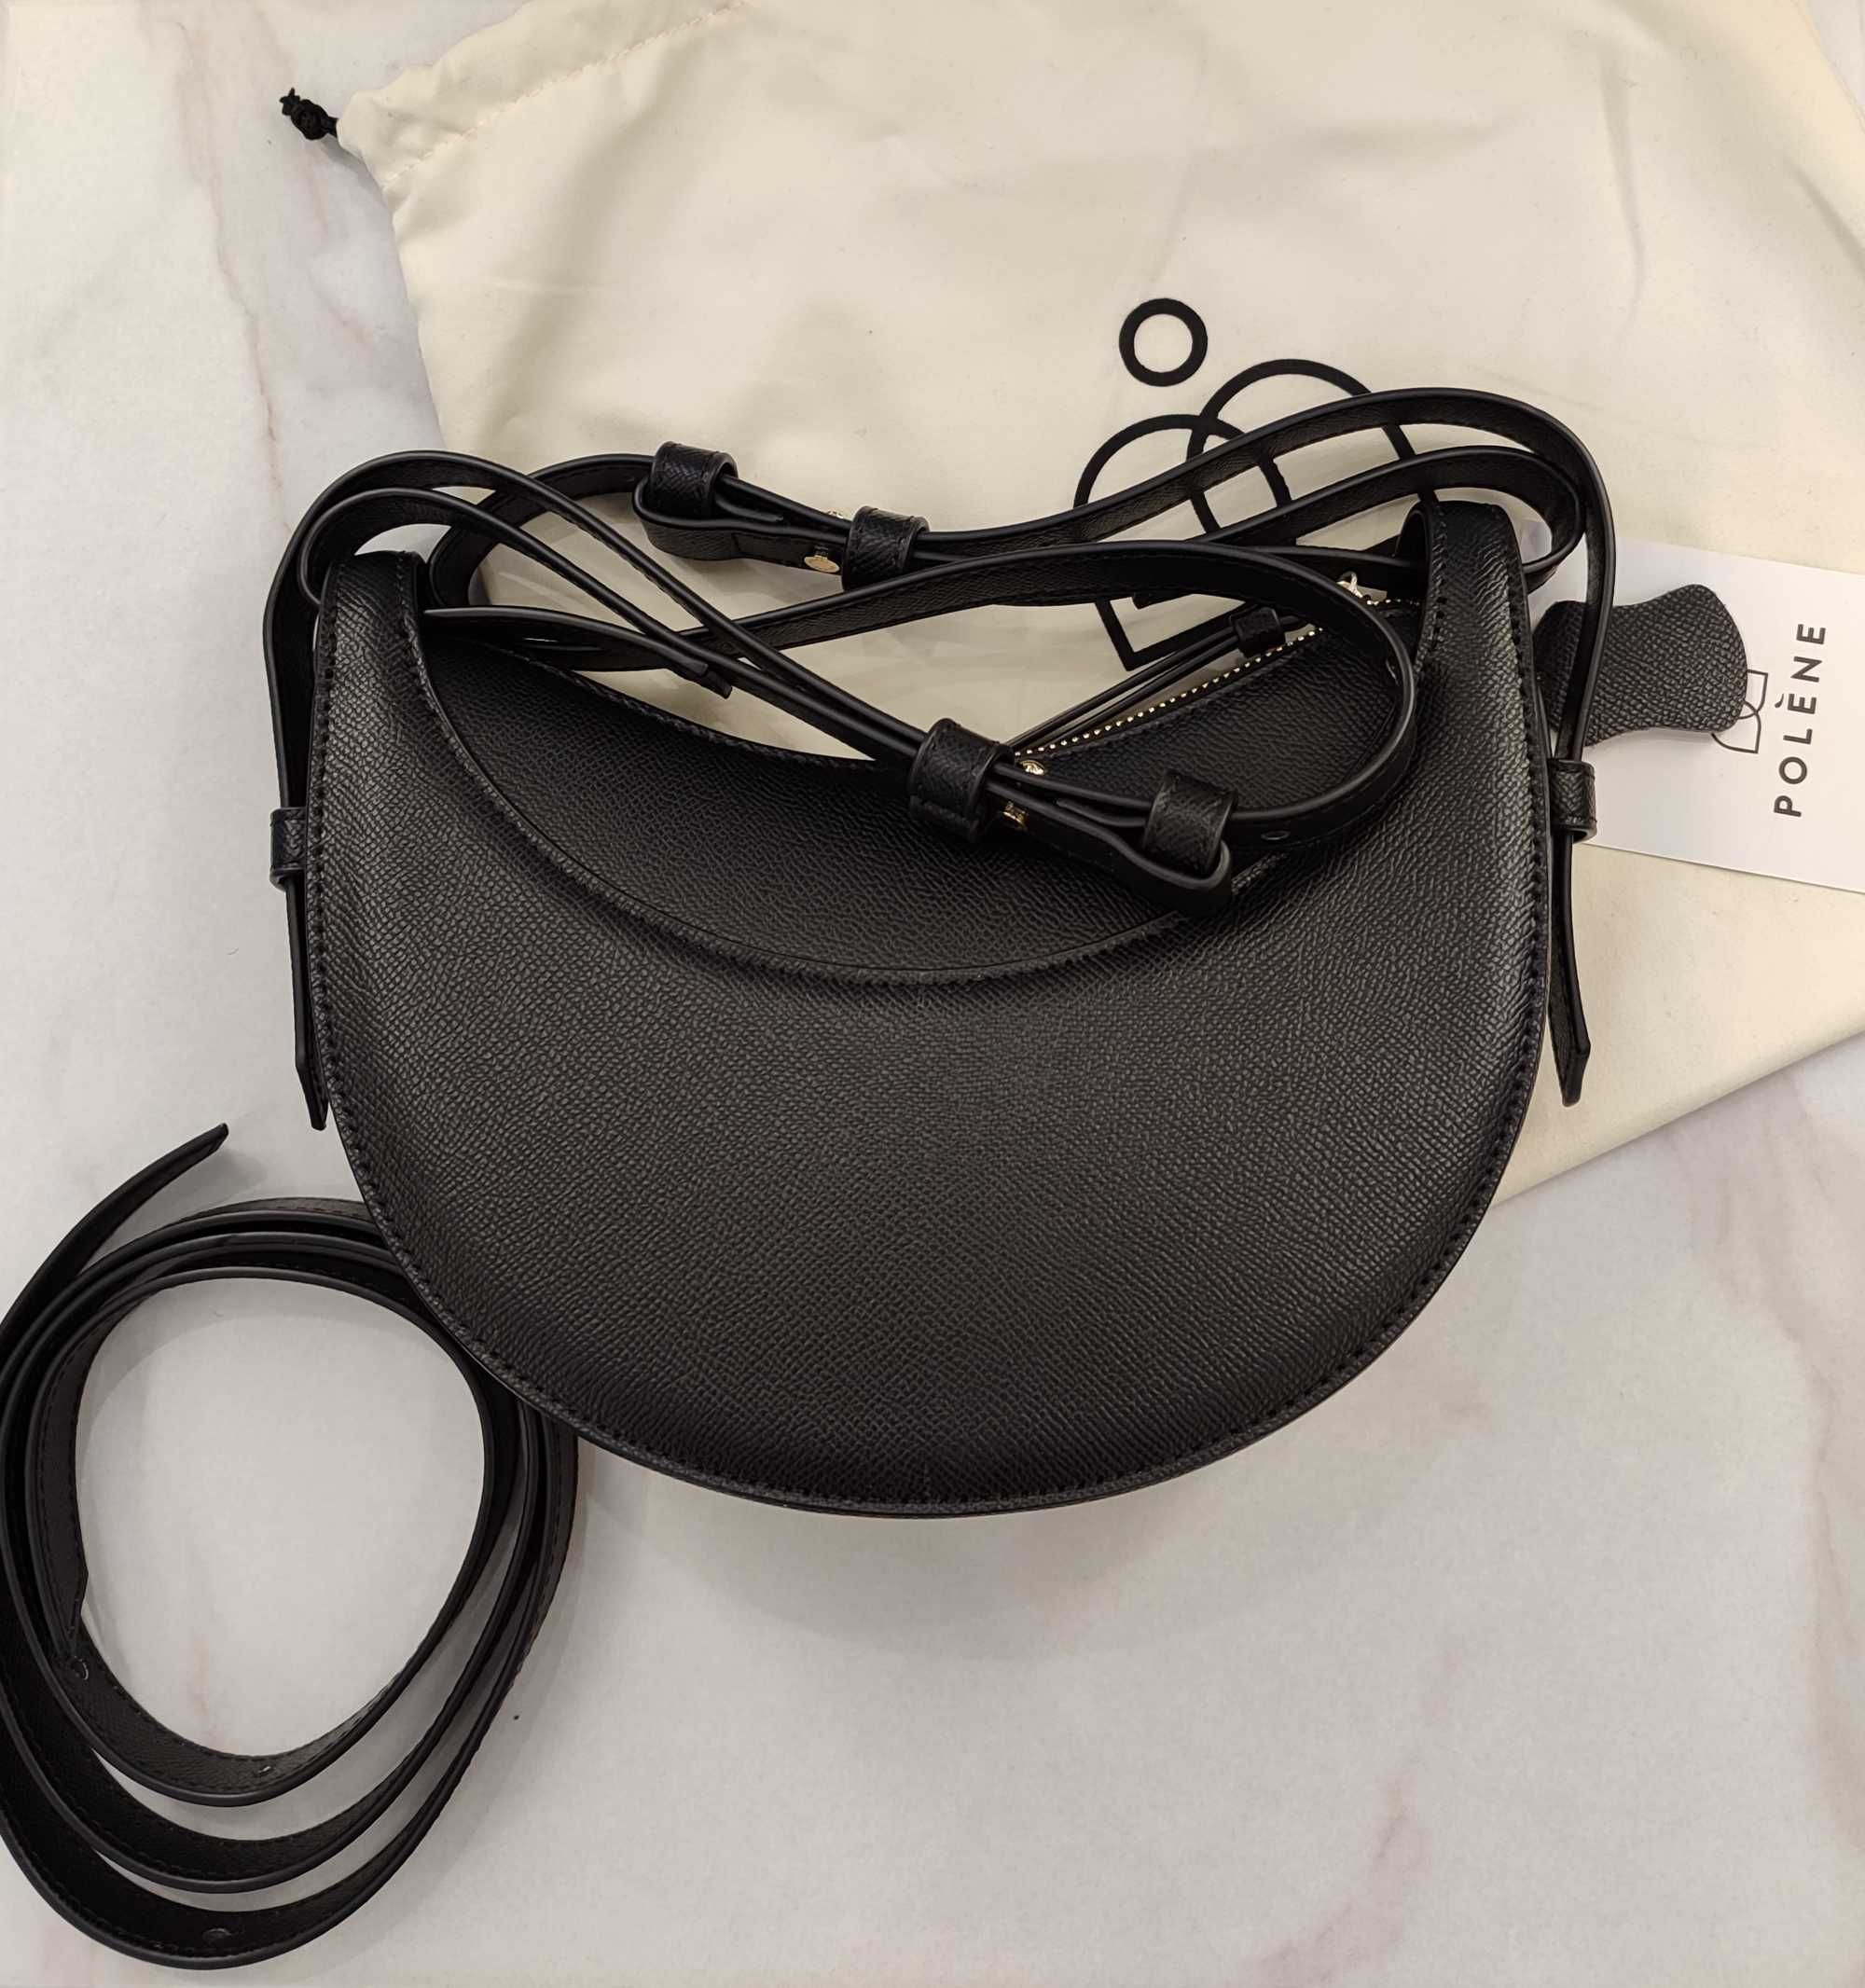 Сумка Polene Bag - N°10 - Monochrome Black